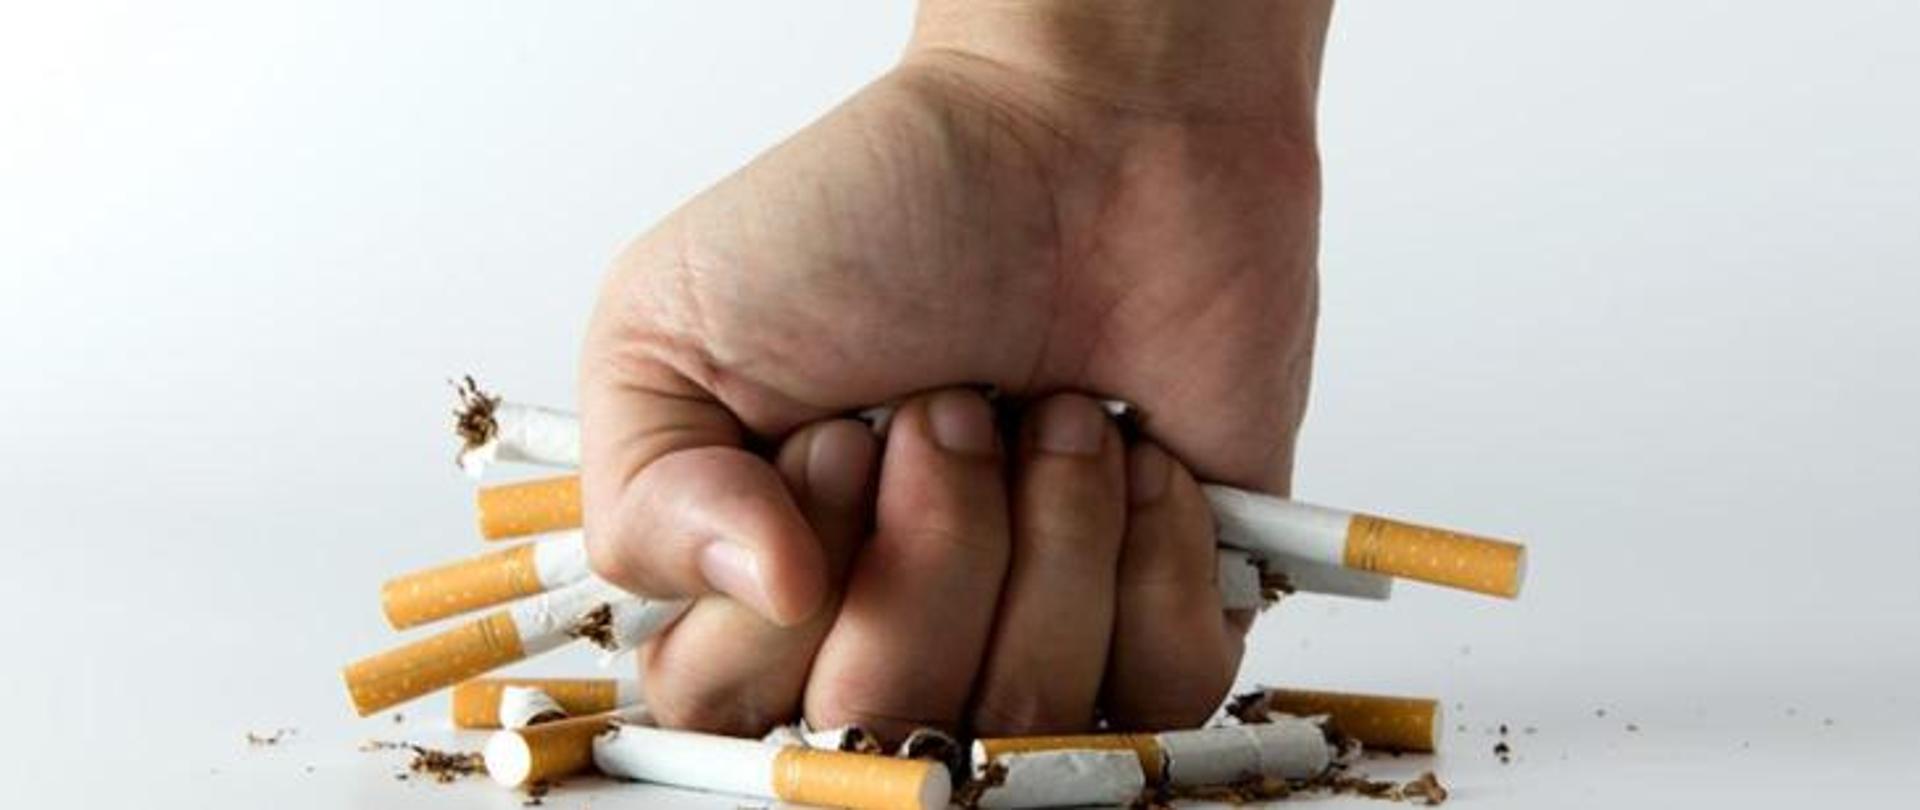 Zdjęcie przedstawiające rękę która niszczy papierosy